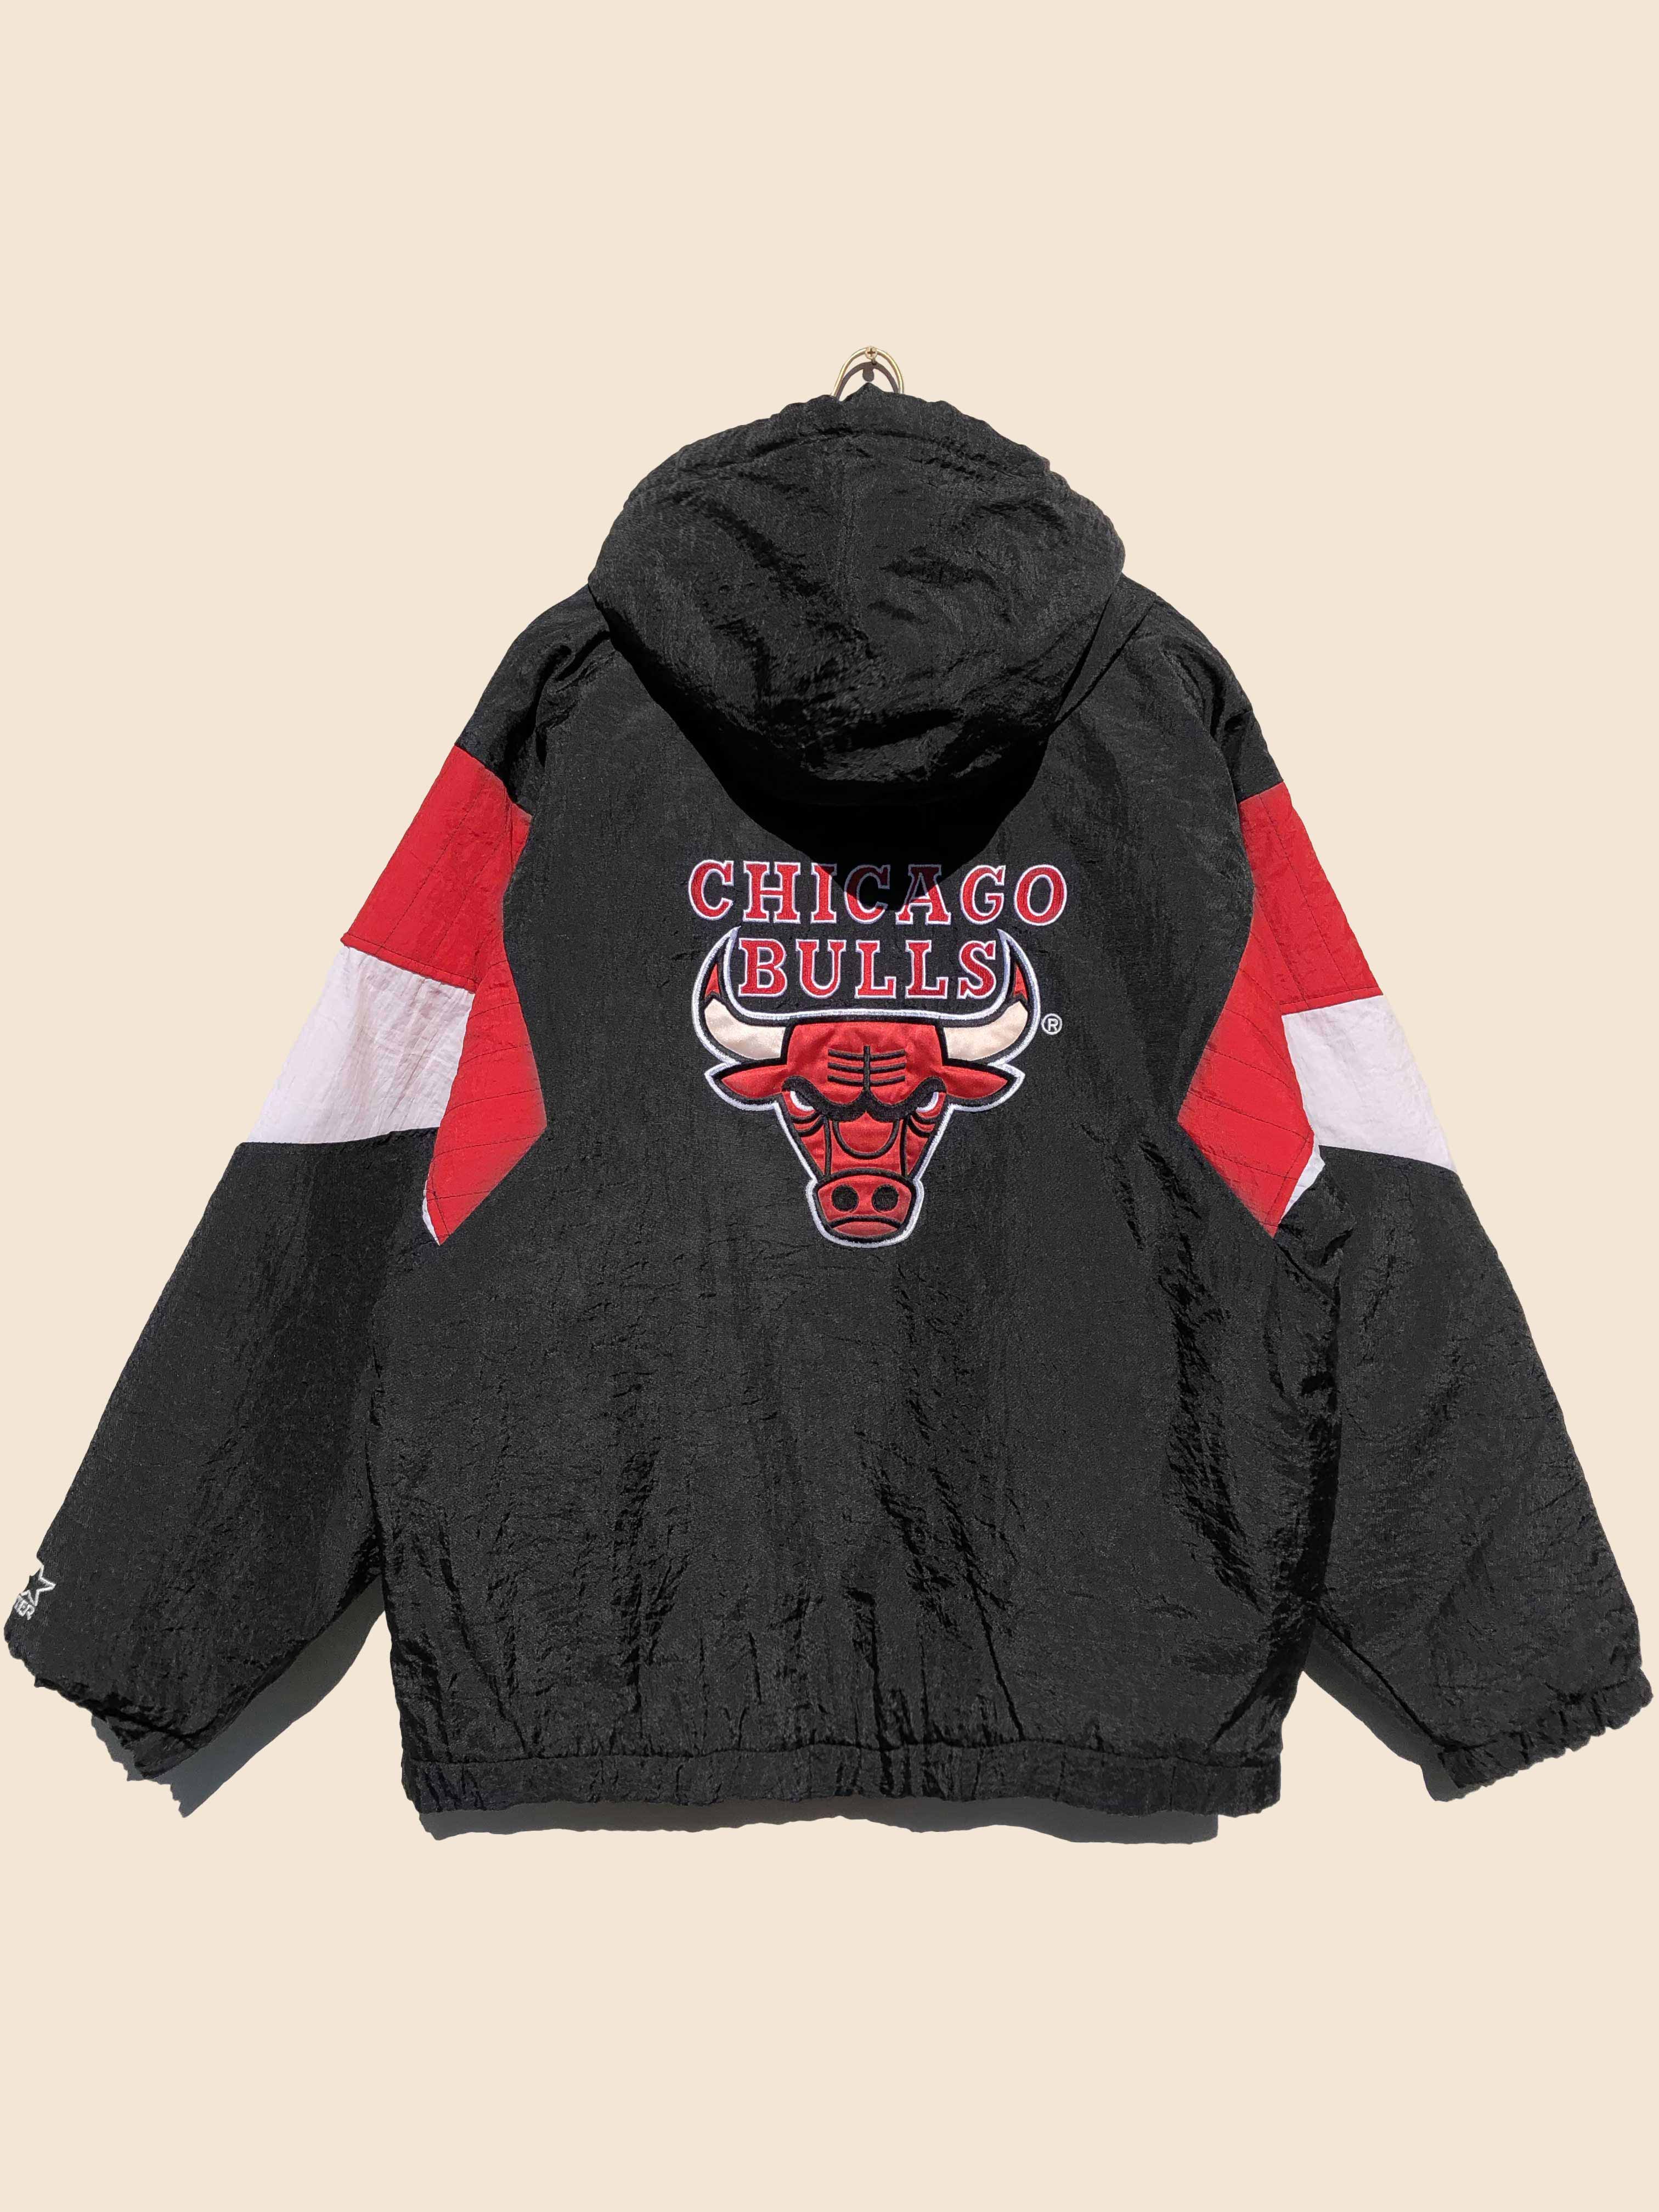 NBA 90's Starter Chicago Bulls Anorak Jacket Black (M)